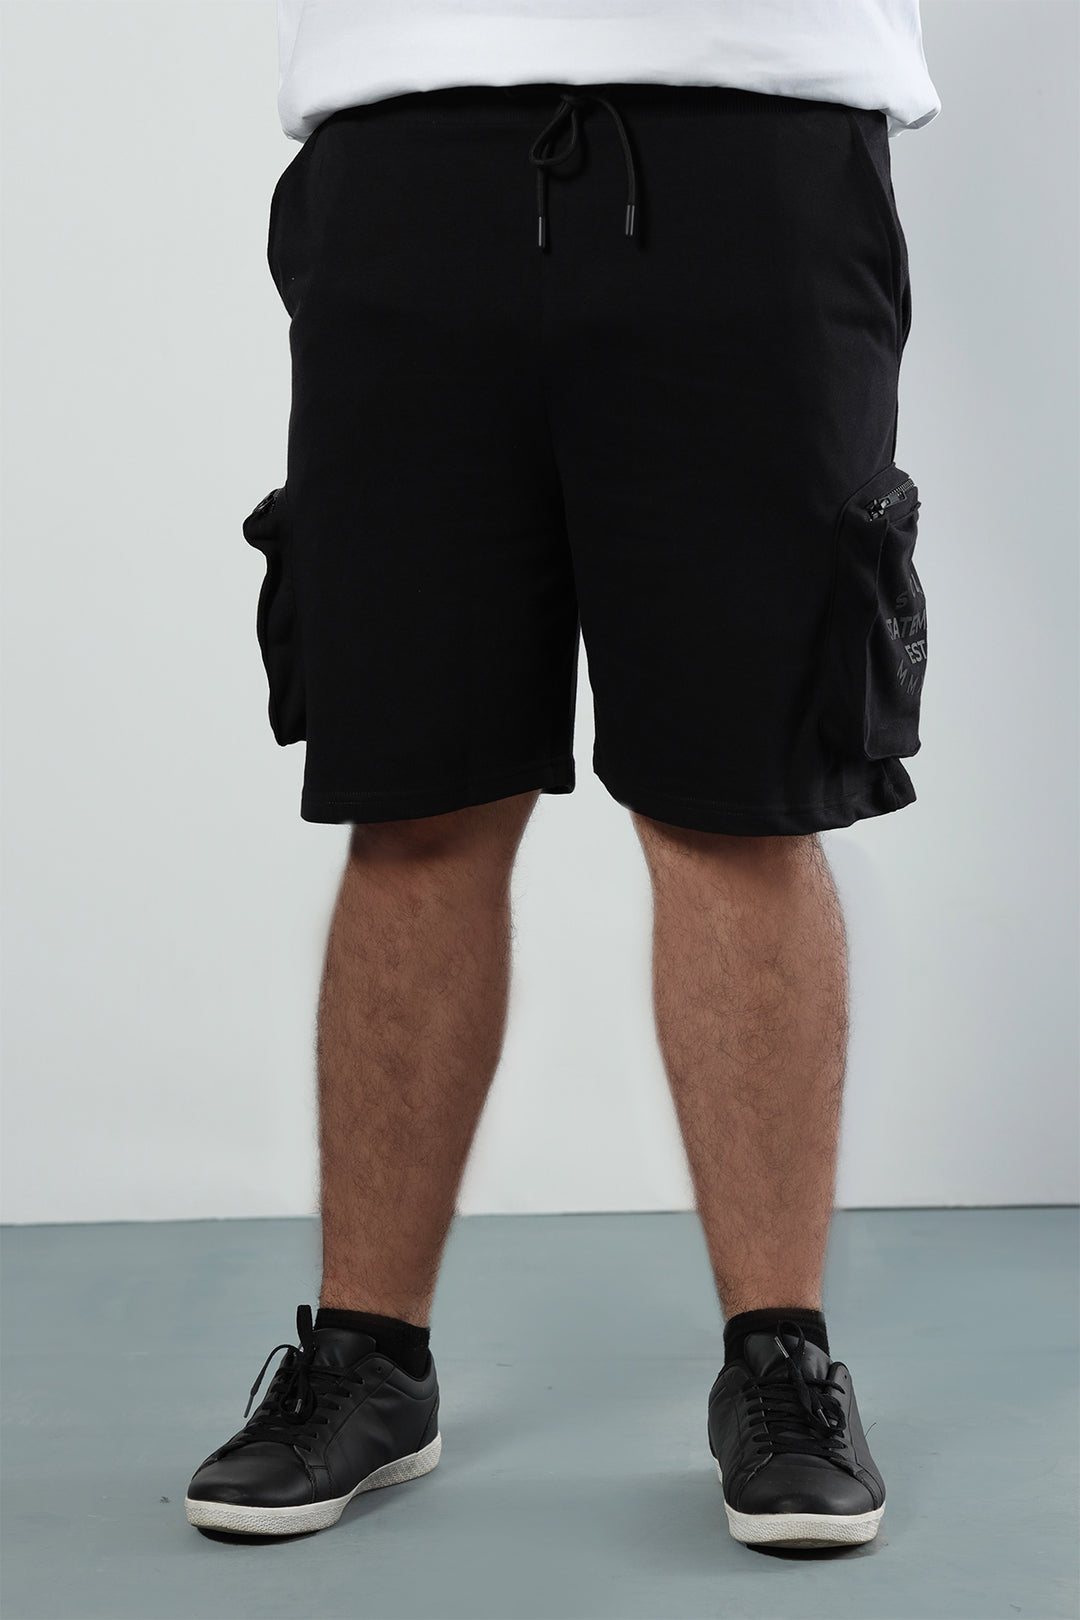 Black SCLO Statement Shorts (Plus Size) - P22 - MSH025P